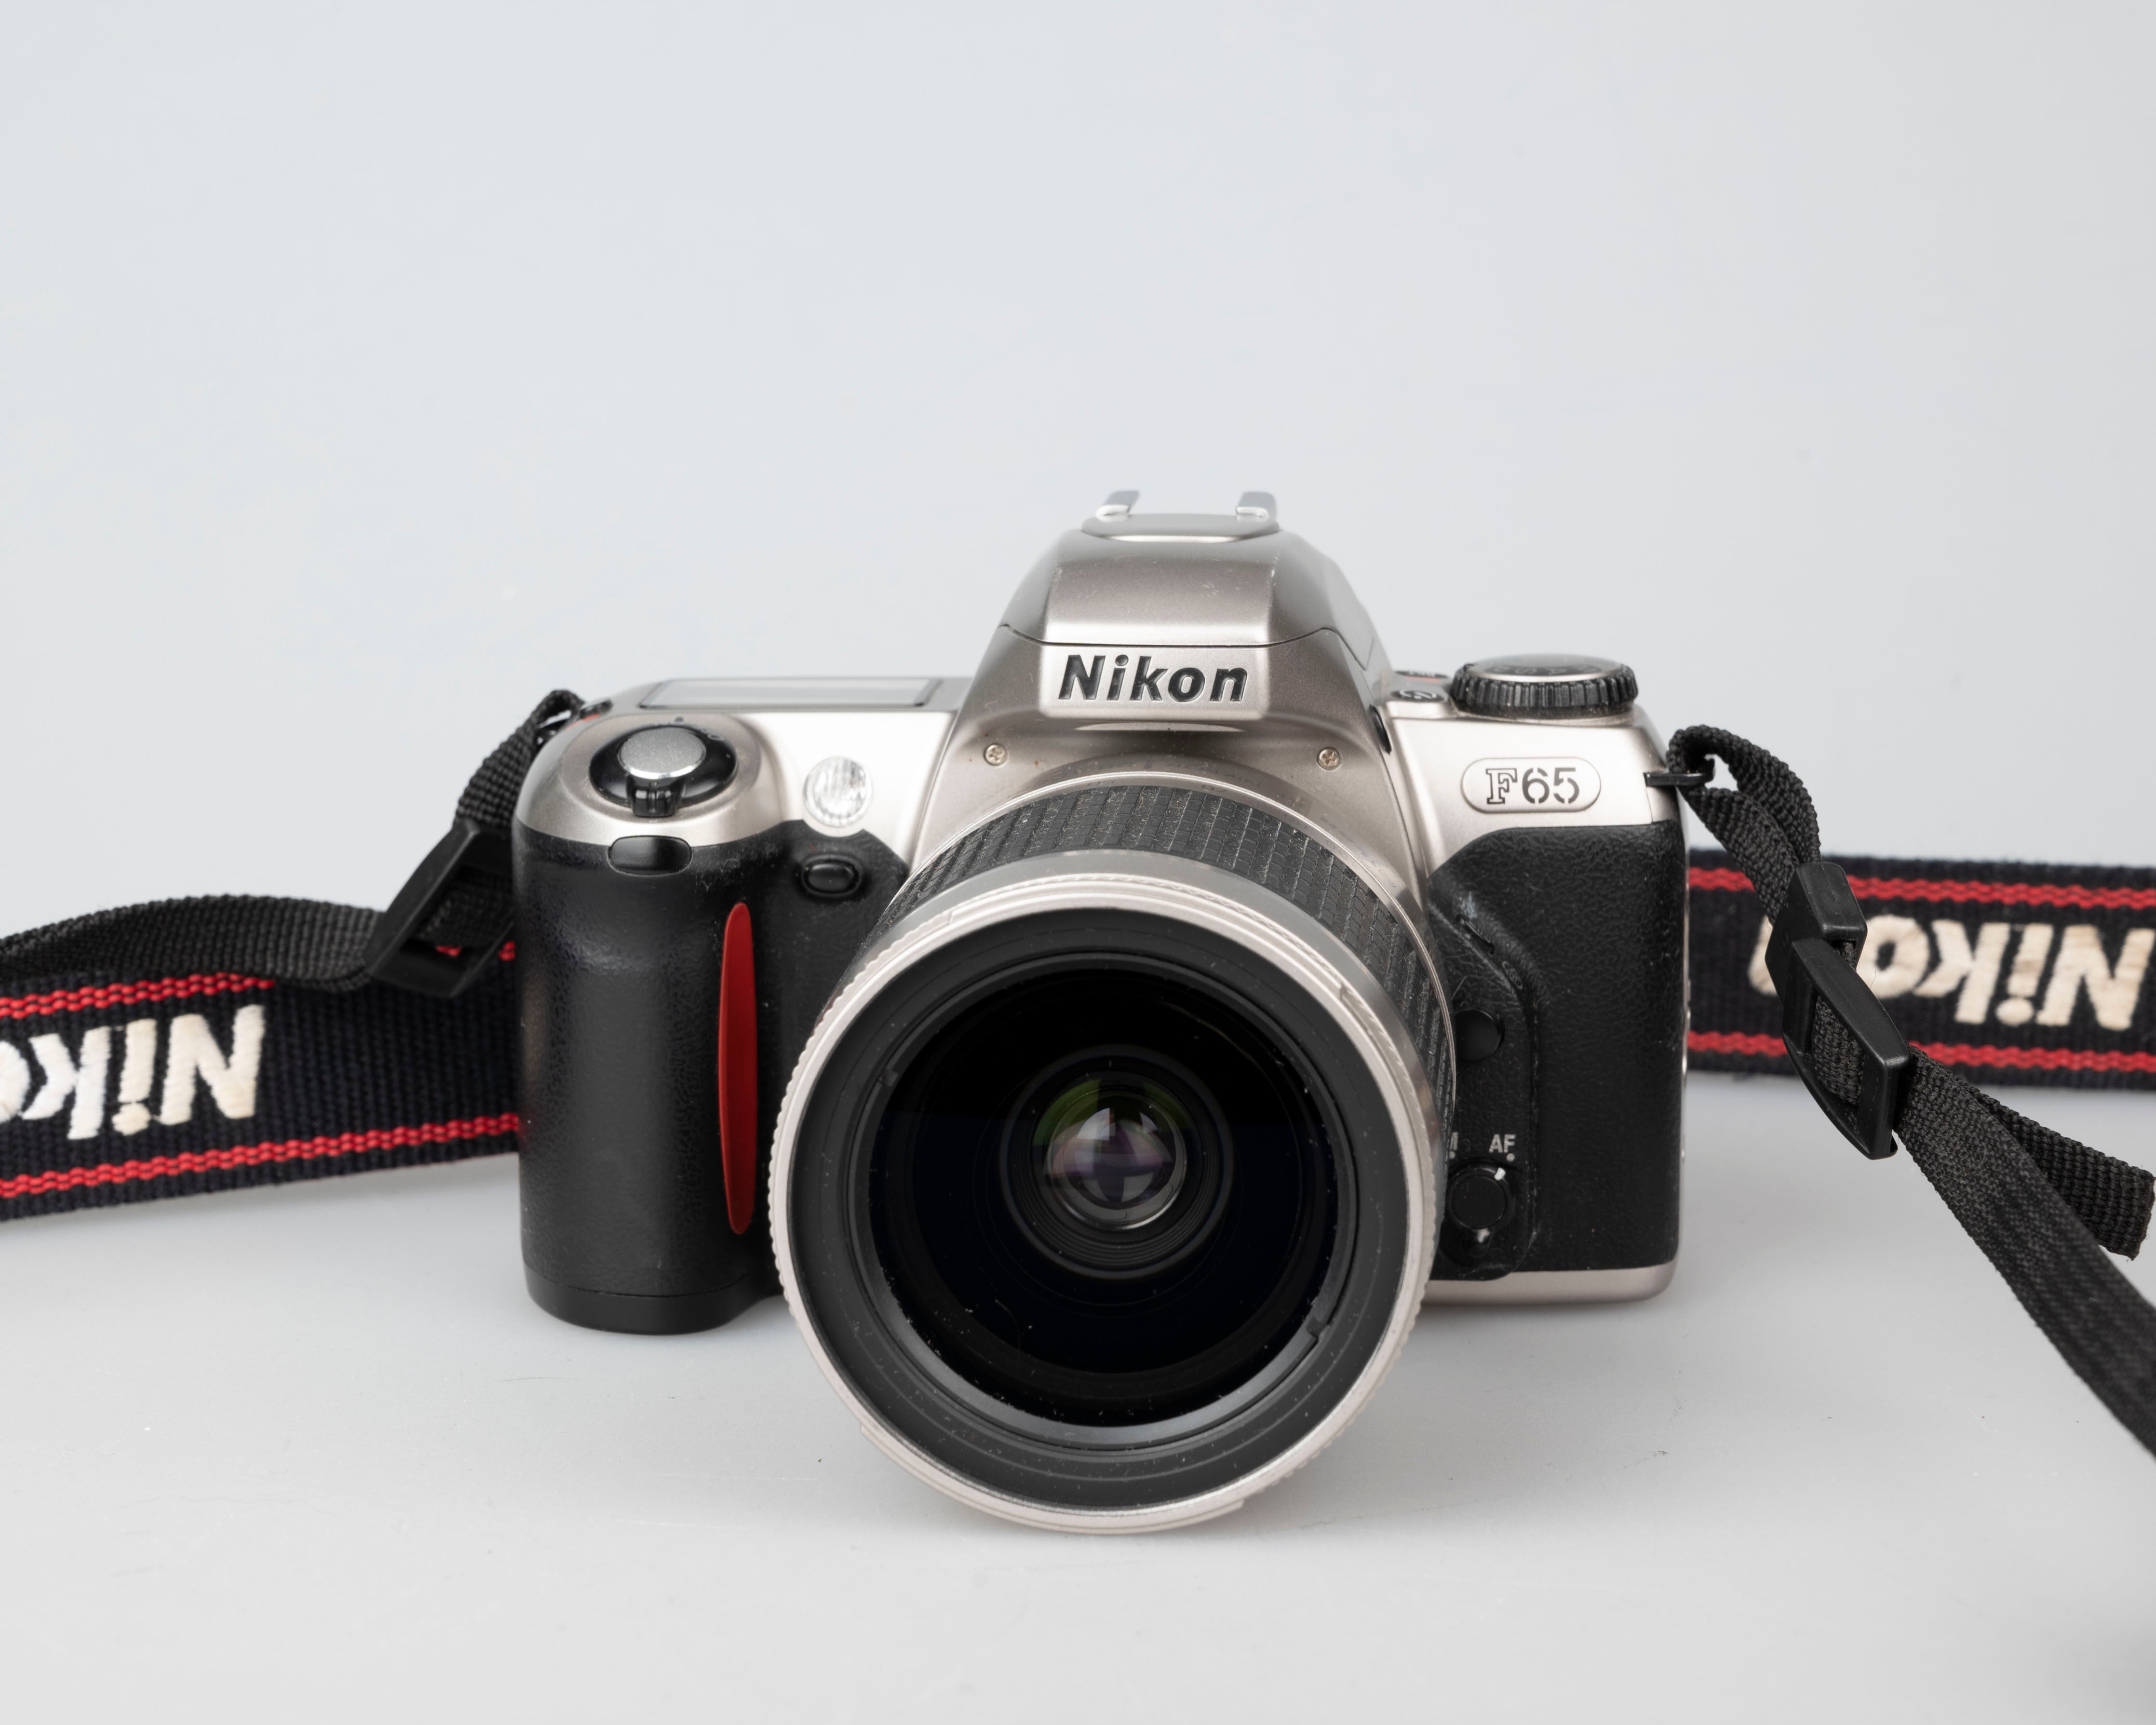 Nikon F65 (aka N65) 35mm film SLR w/ AF Nikkor 28-100mm lens